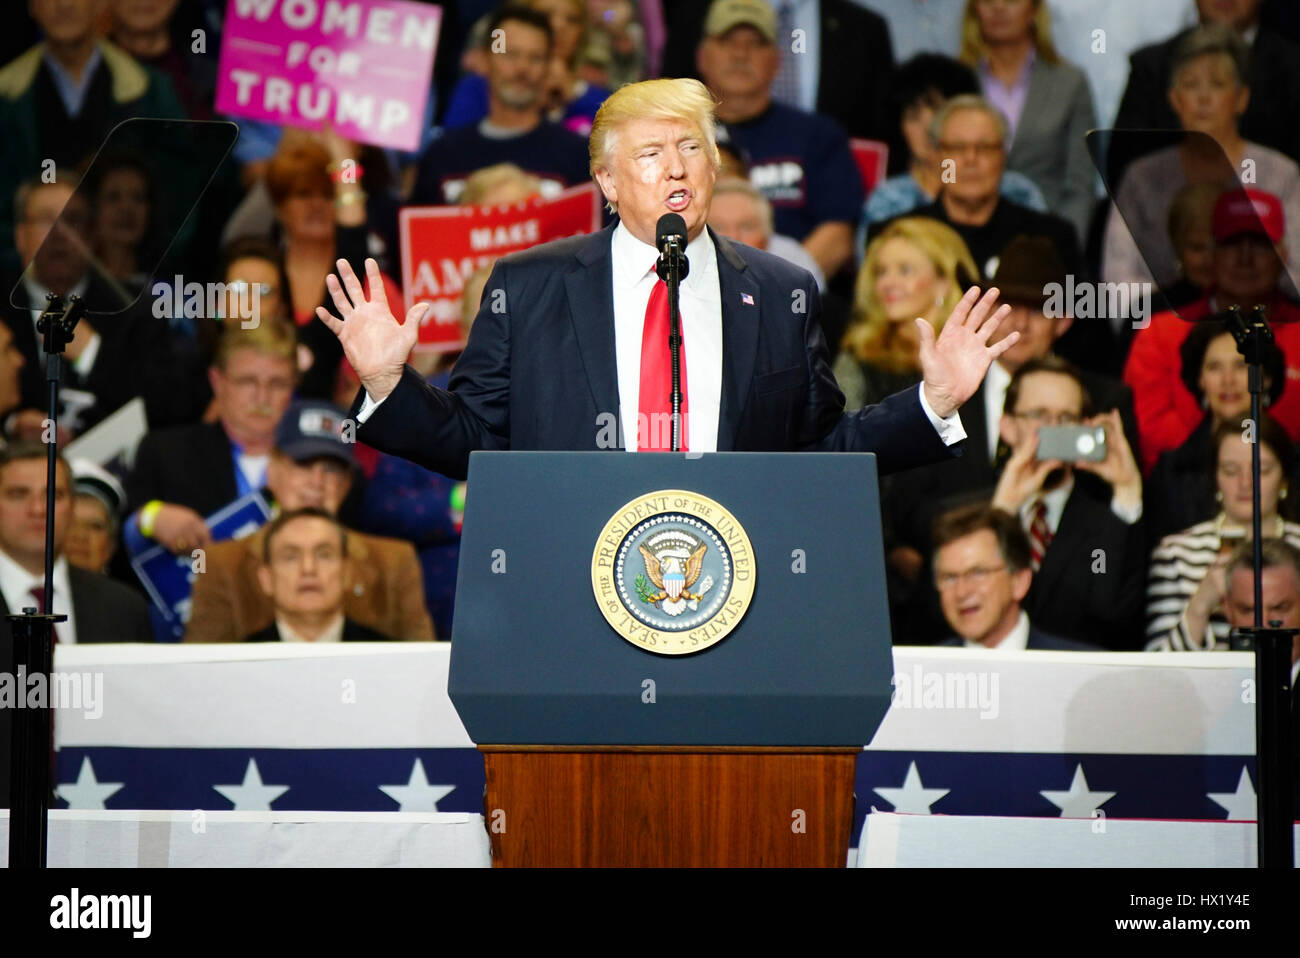 Le président Donald J. Trump s'exprimant lors d'un rassemblement à Louisville Exposition Center le 20 mars 2017 à Louisville, Kentucky. Banque D'Images